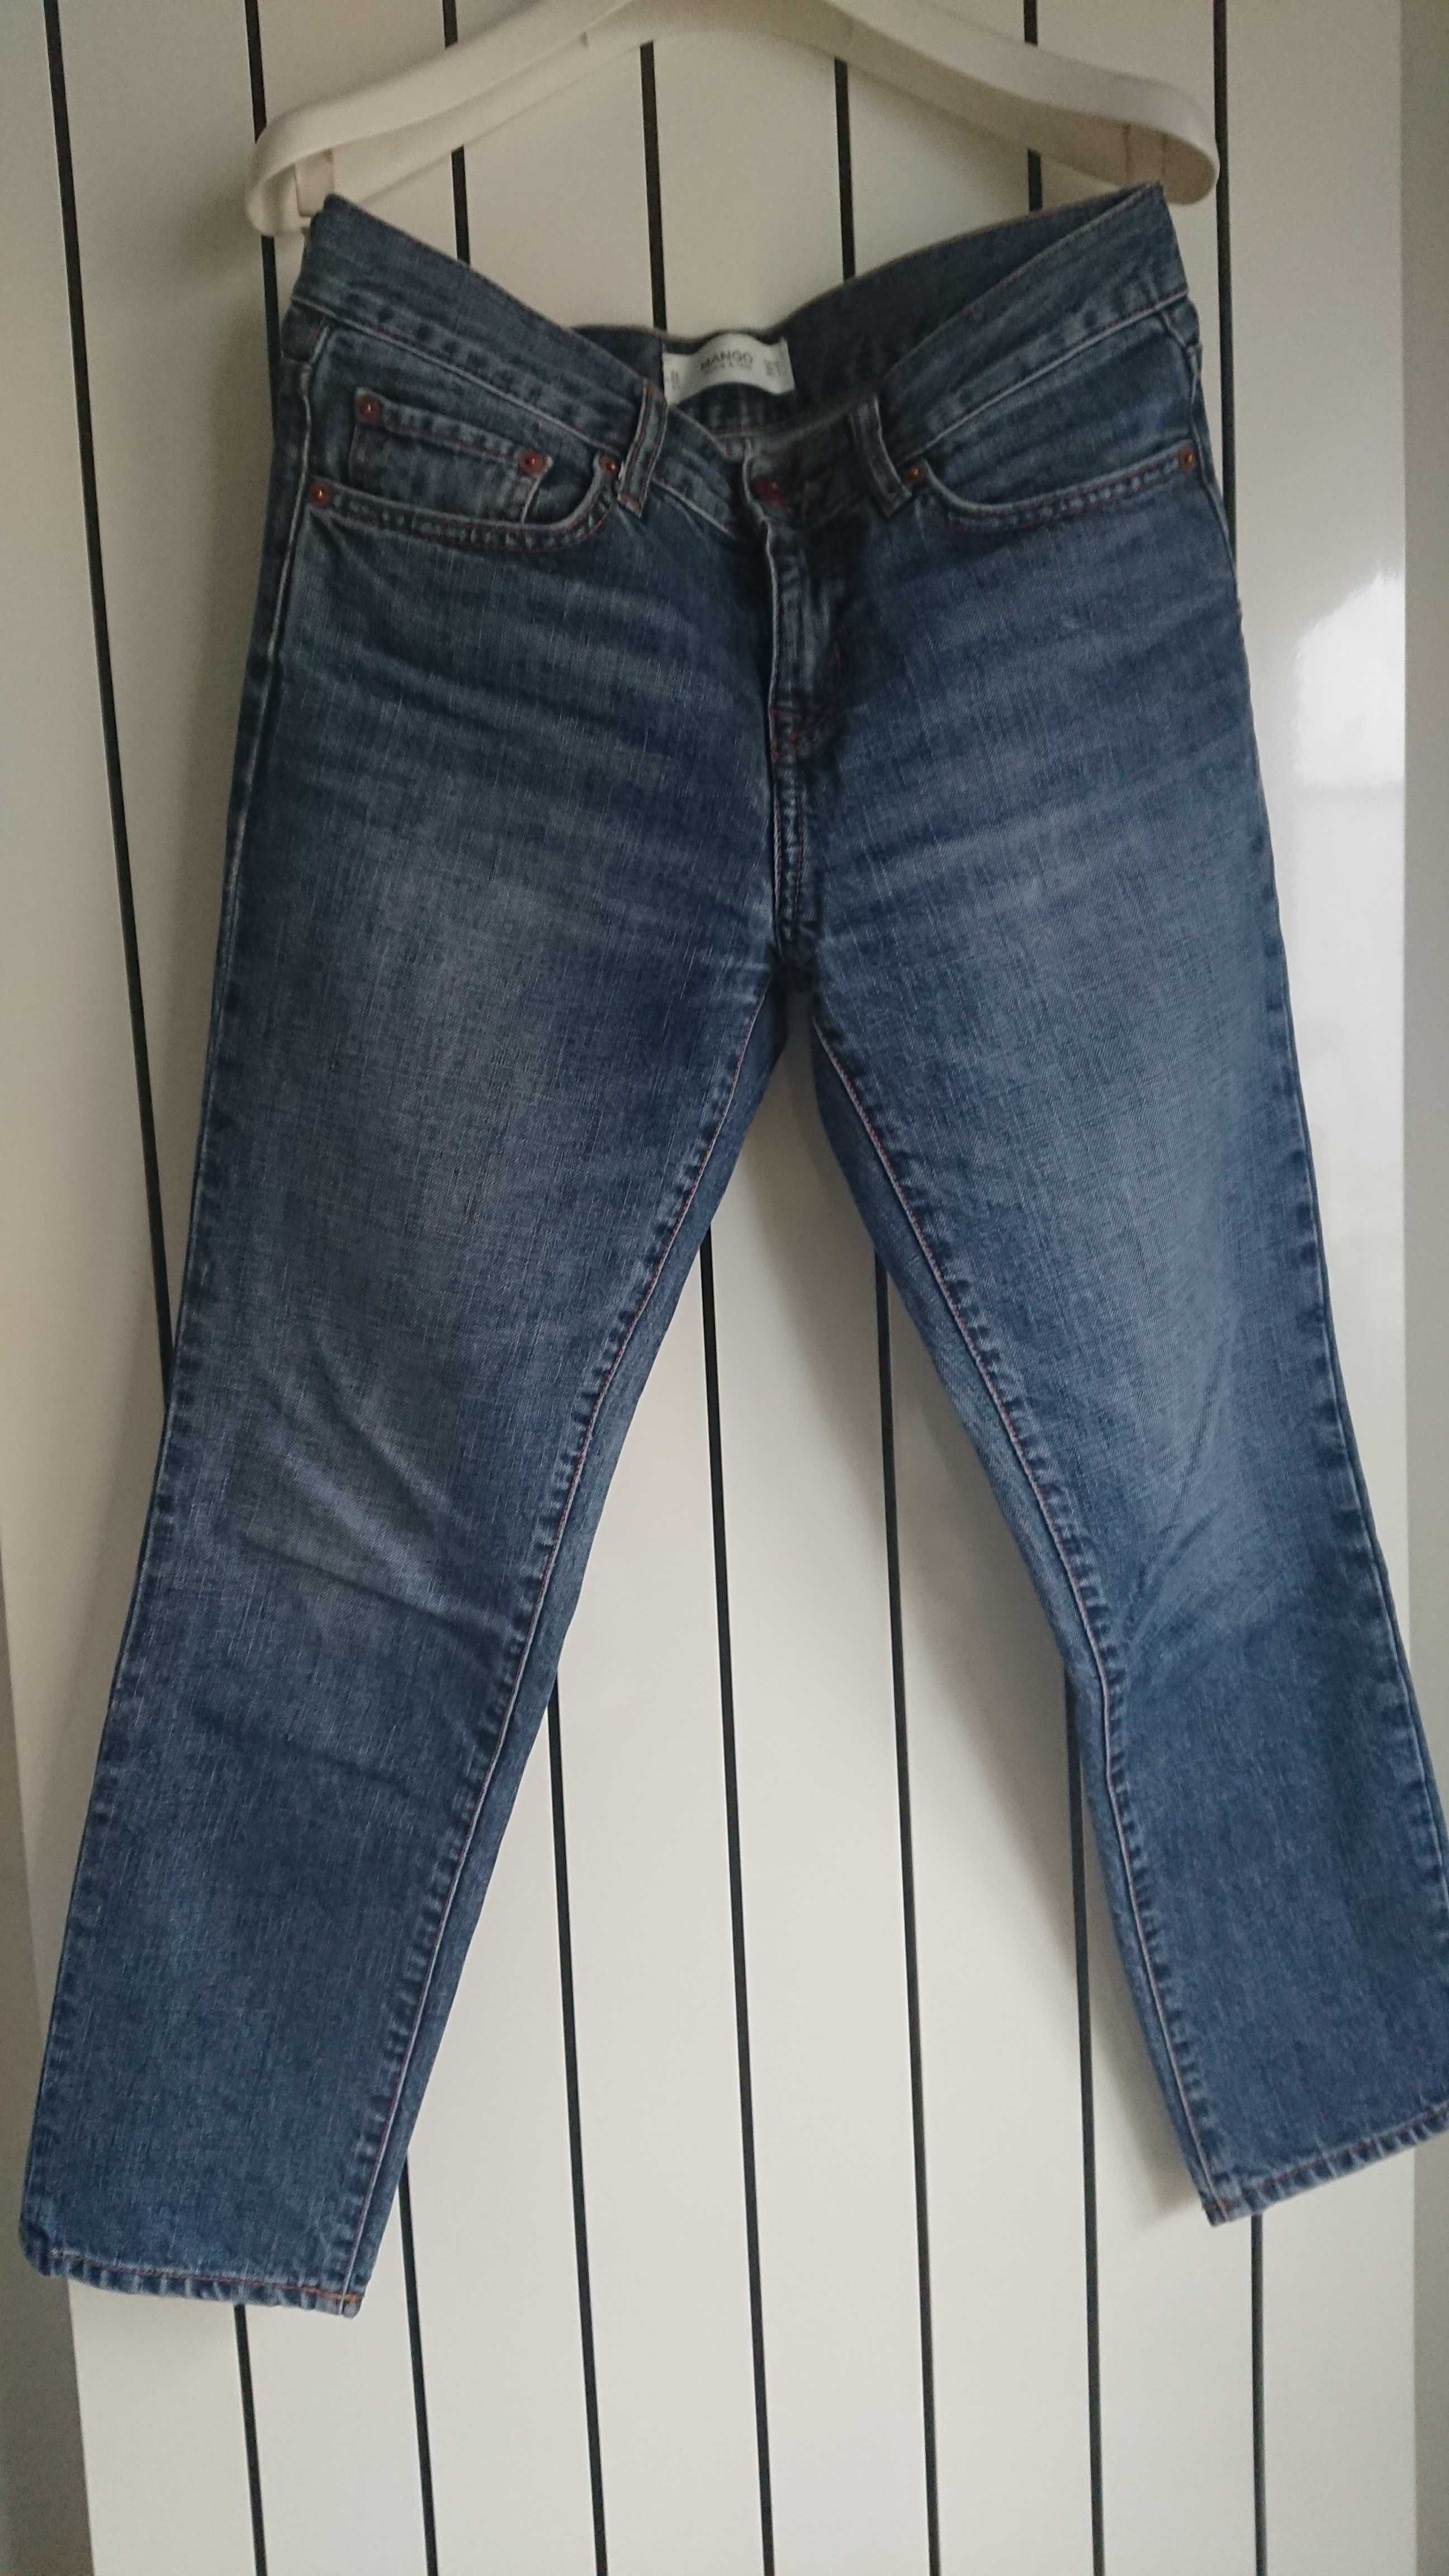 Jeans regular fit, marime XS/34, marca MANGO, culoare albastru